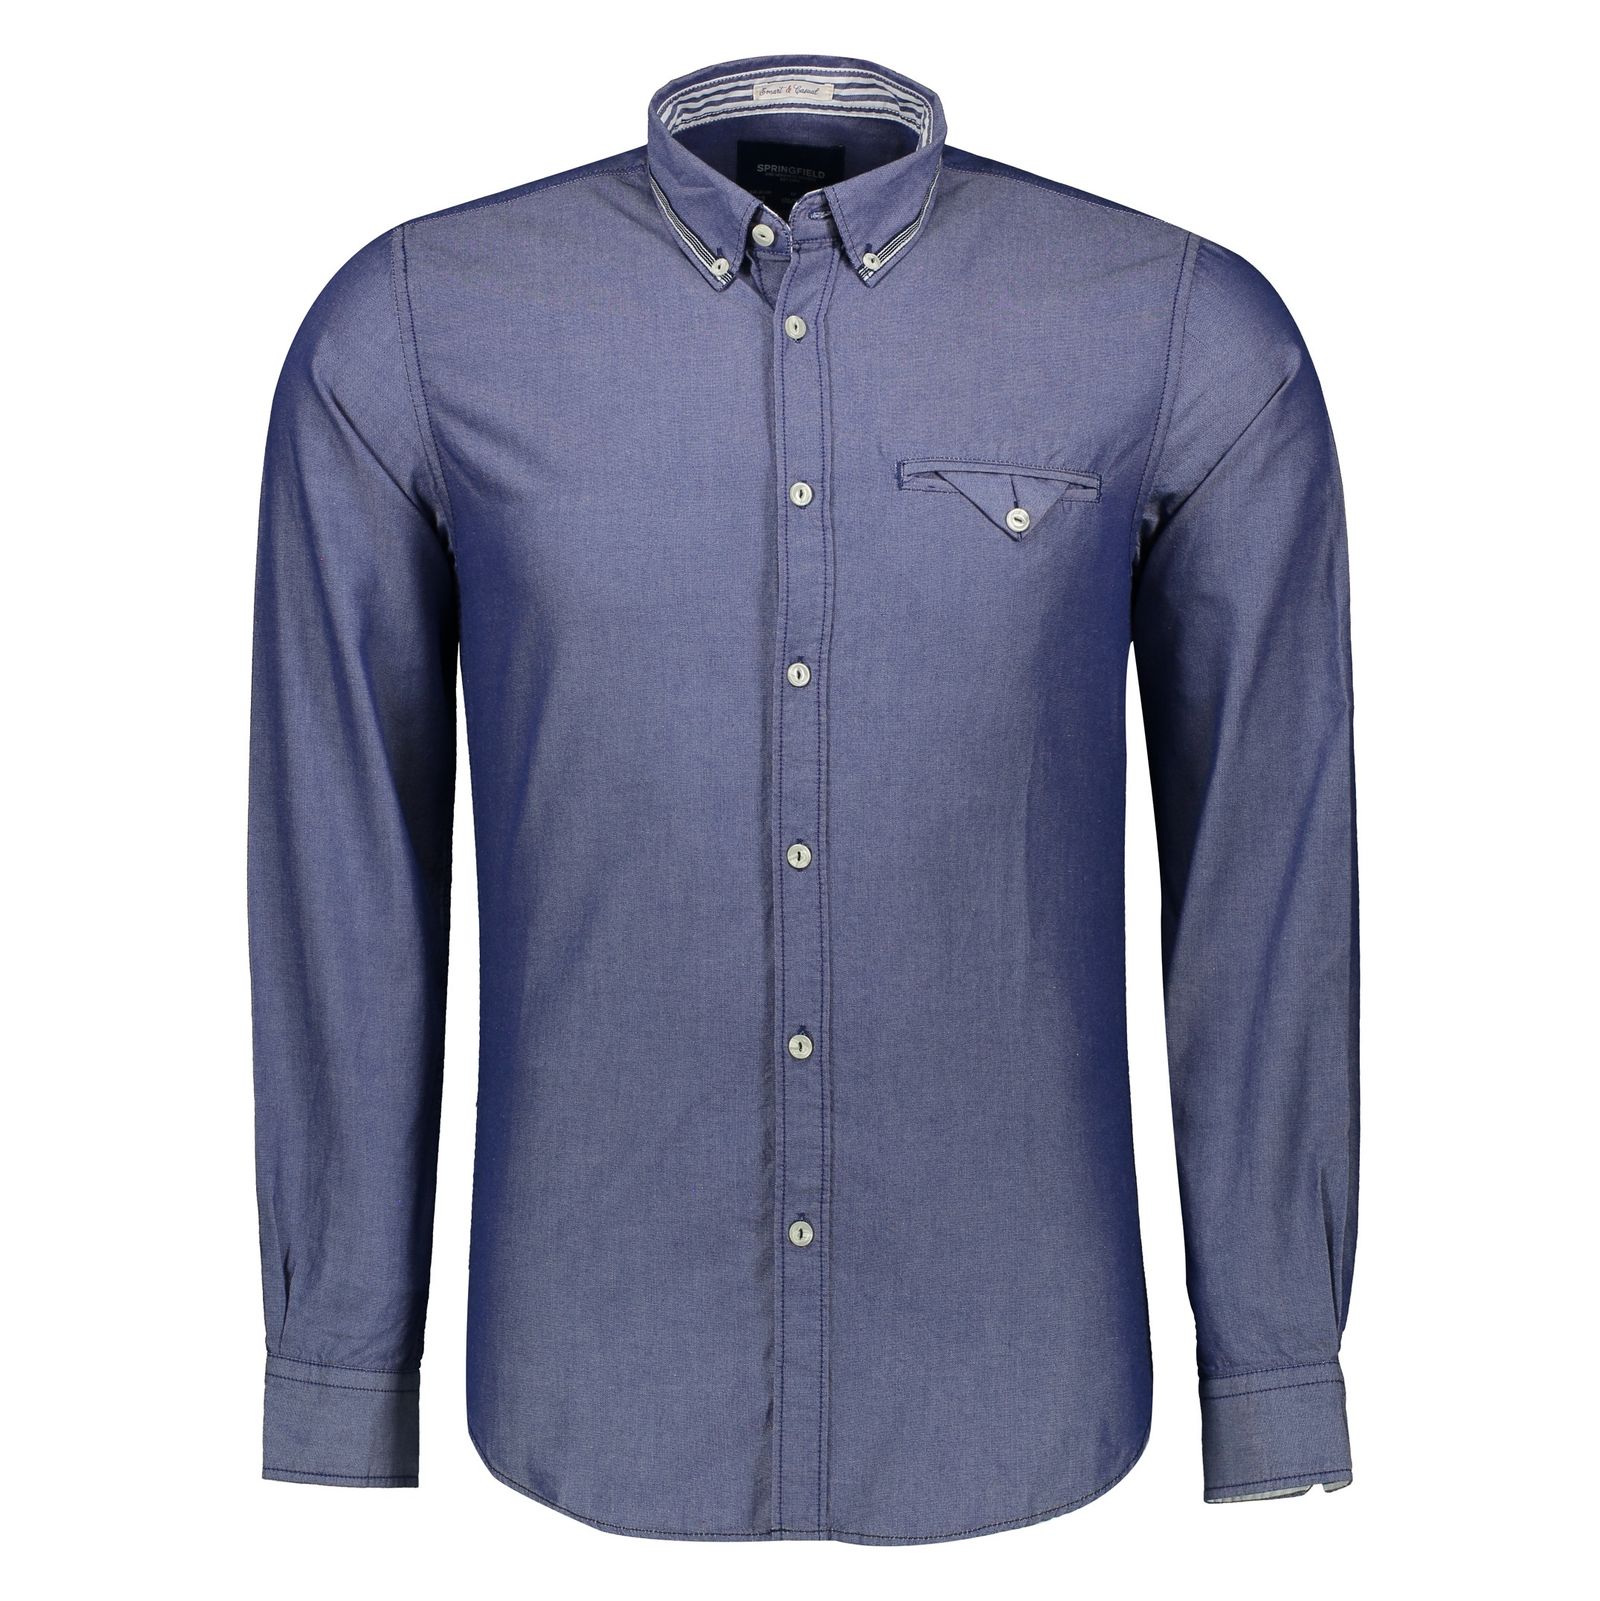 پیراهن مردانه اسپرینگ فیلد مدل 0275549-12 - آبی - 2